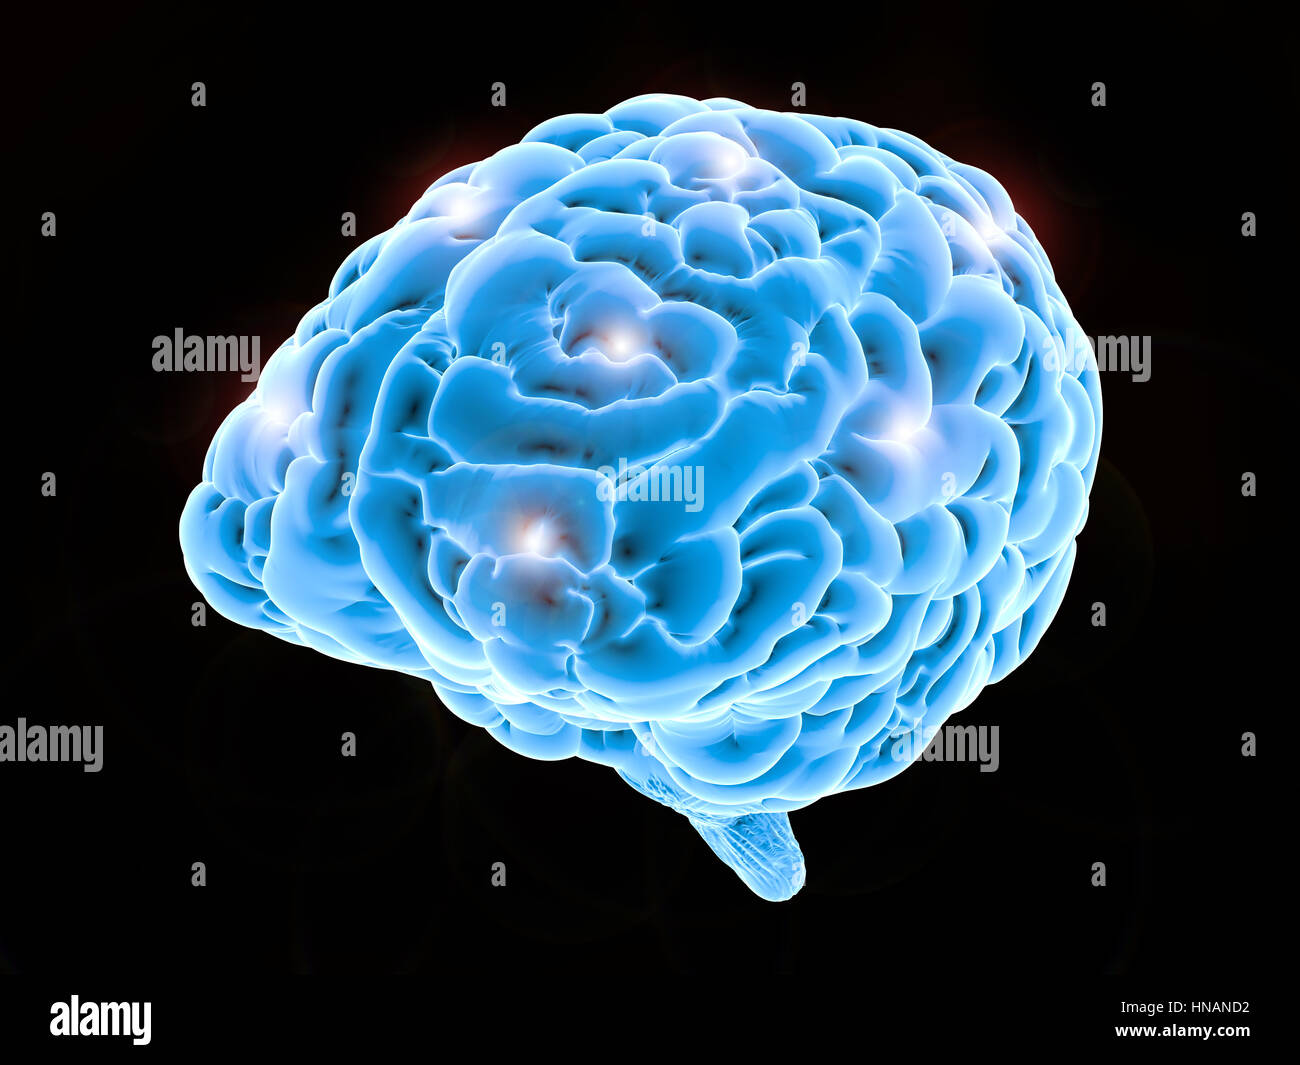 Brain power concept avec rendu 3D du cerveau humain brillant Banque D'Images